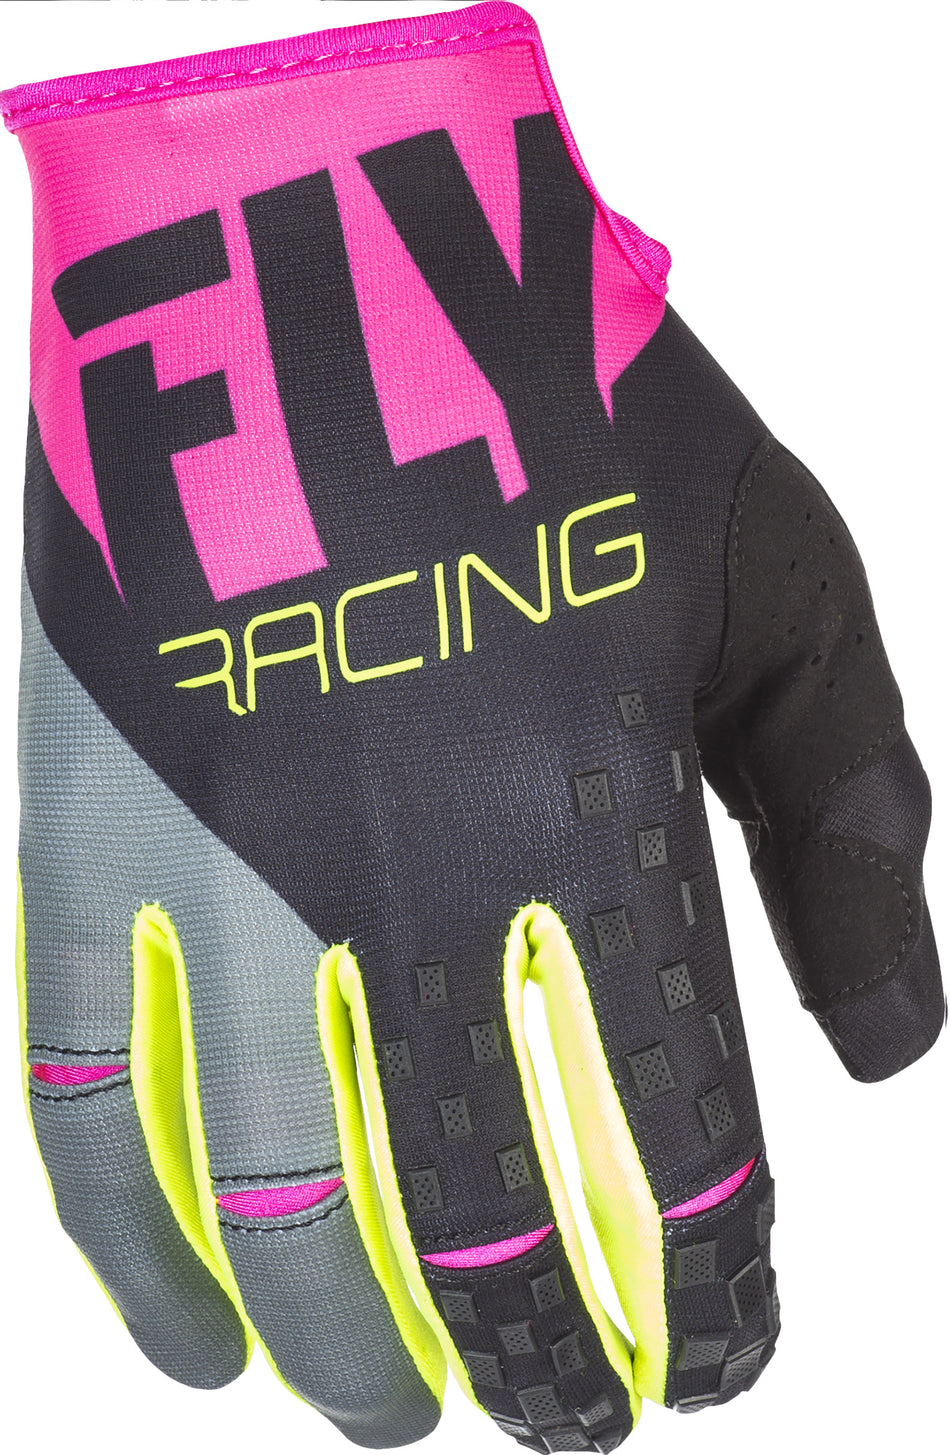 FLY RACING Kinetic Gloves Neon Pink/Black/Hi-Vis Sz 10 371-41910